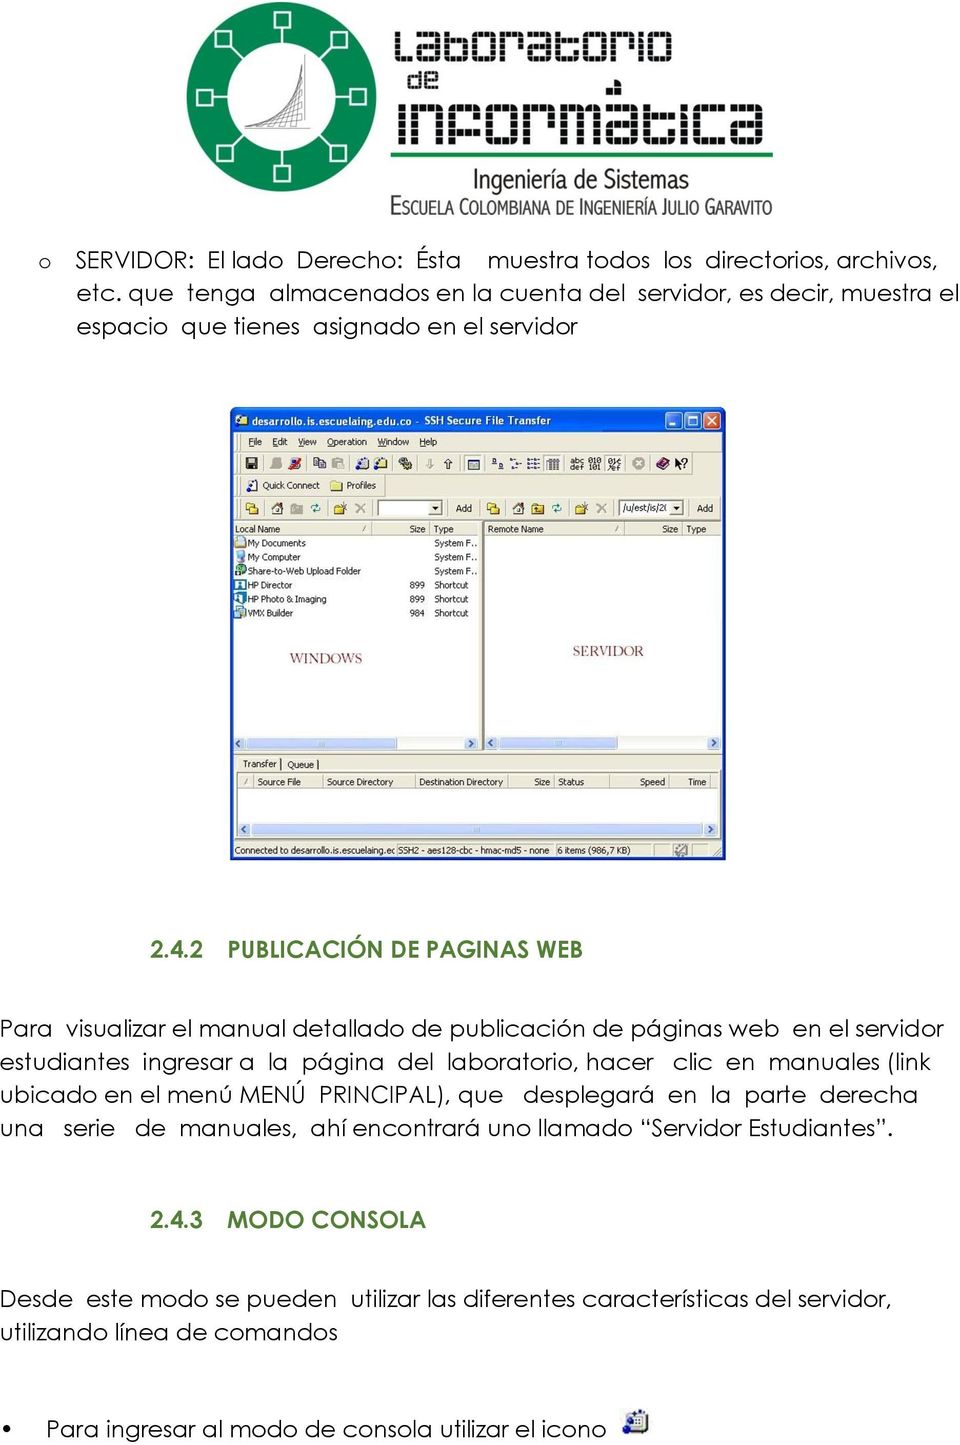 2 PUBLICACIÓN DE PAGINAS WEB Para visualizar el manual detallado de publicación de páginas web en el servidor estudiantes ingresar a la página del laboratorio, hacer clic en